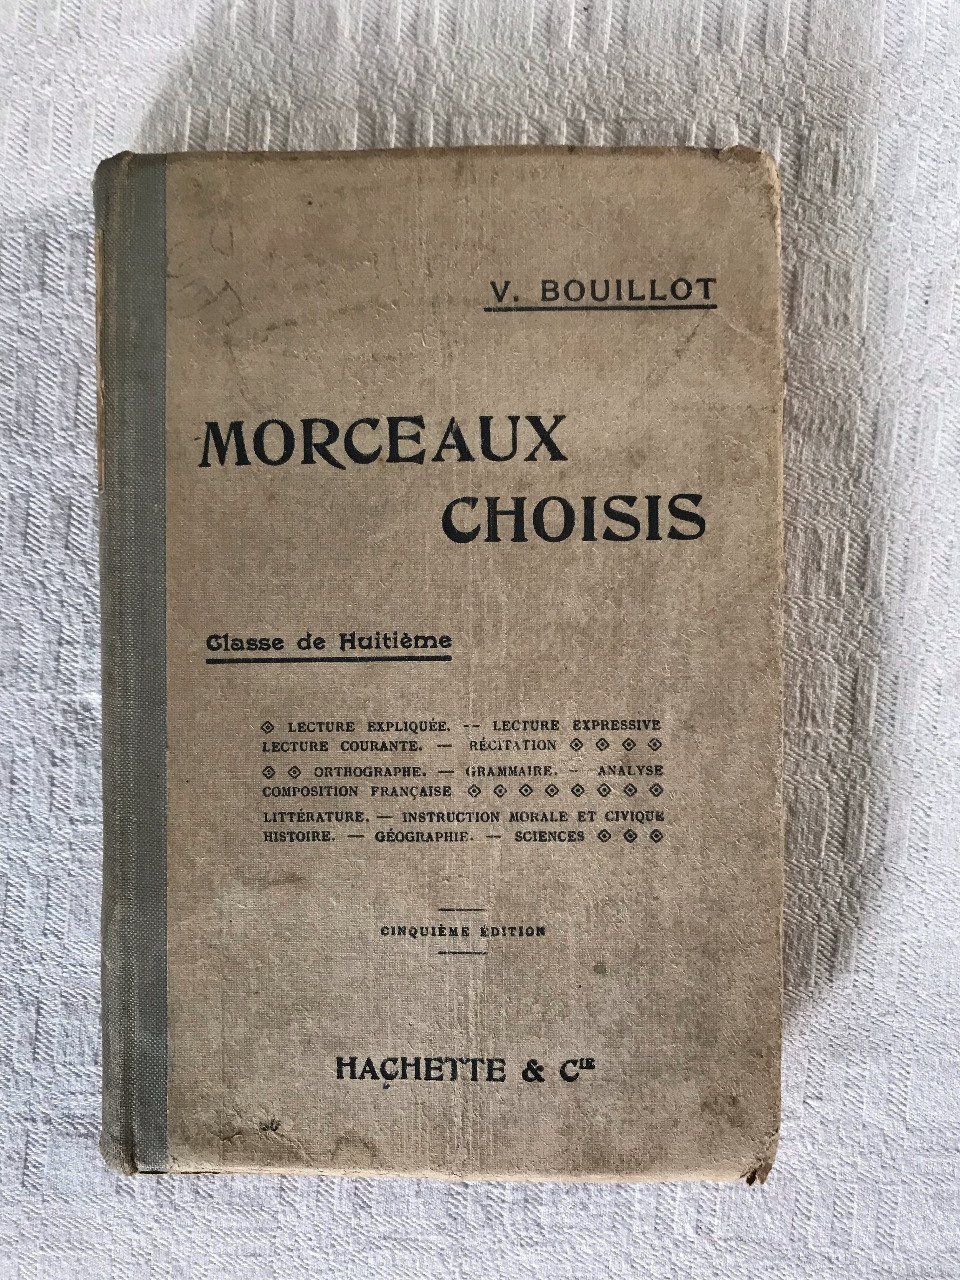 Livre scolaire, Morceaux choisis, V. Bouillot, Hachette,  1914